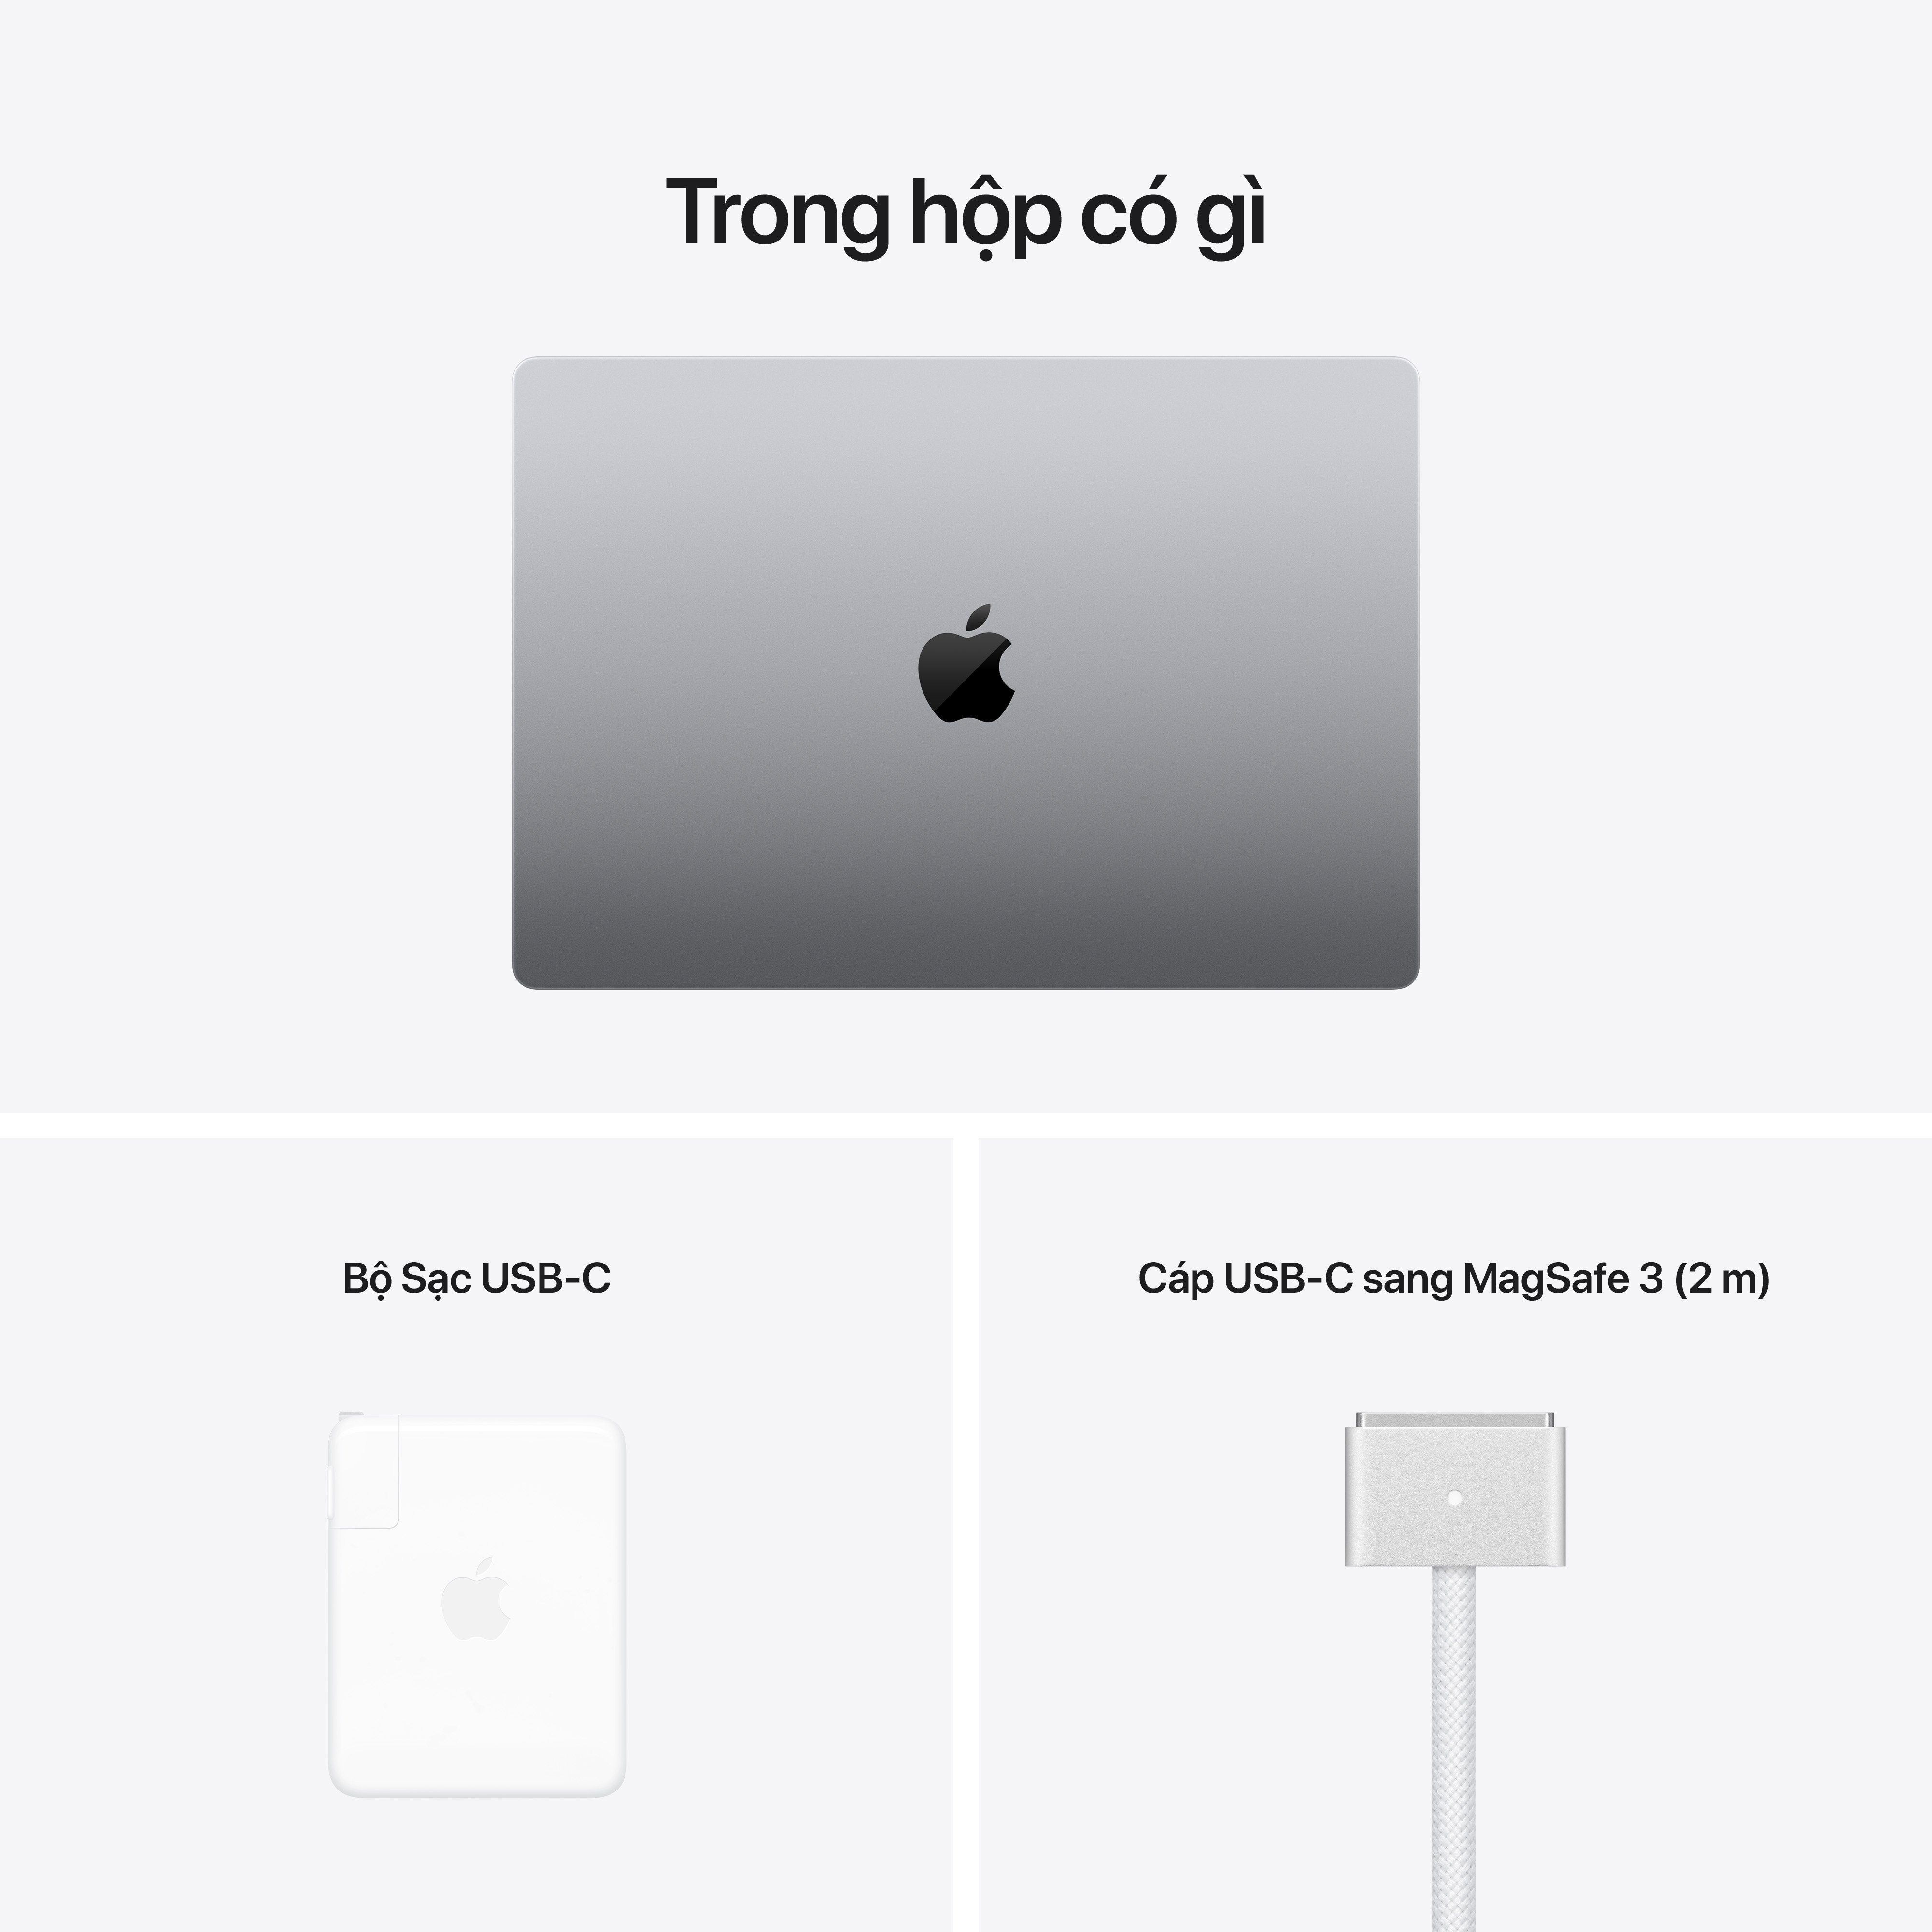 MacBook Pro 2021 16.2 inches M1 Pro/M1 Max - Hàng Chính Hãng